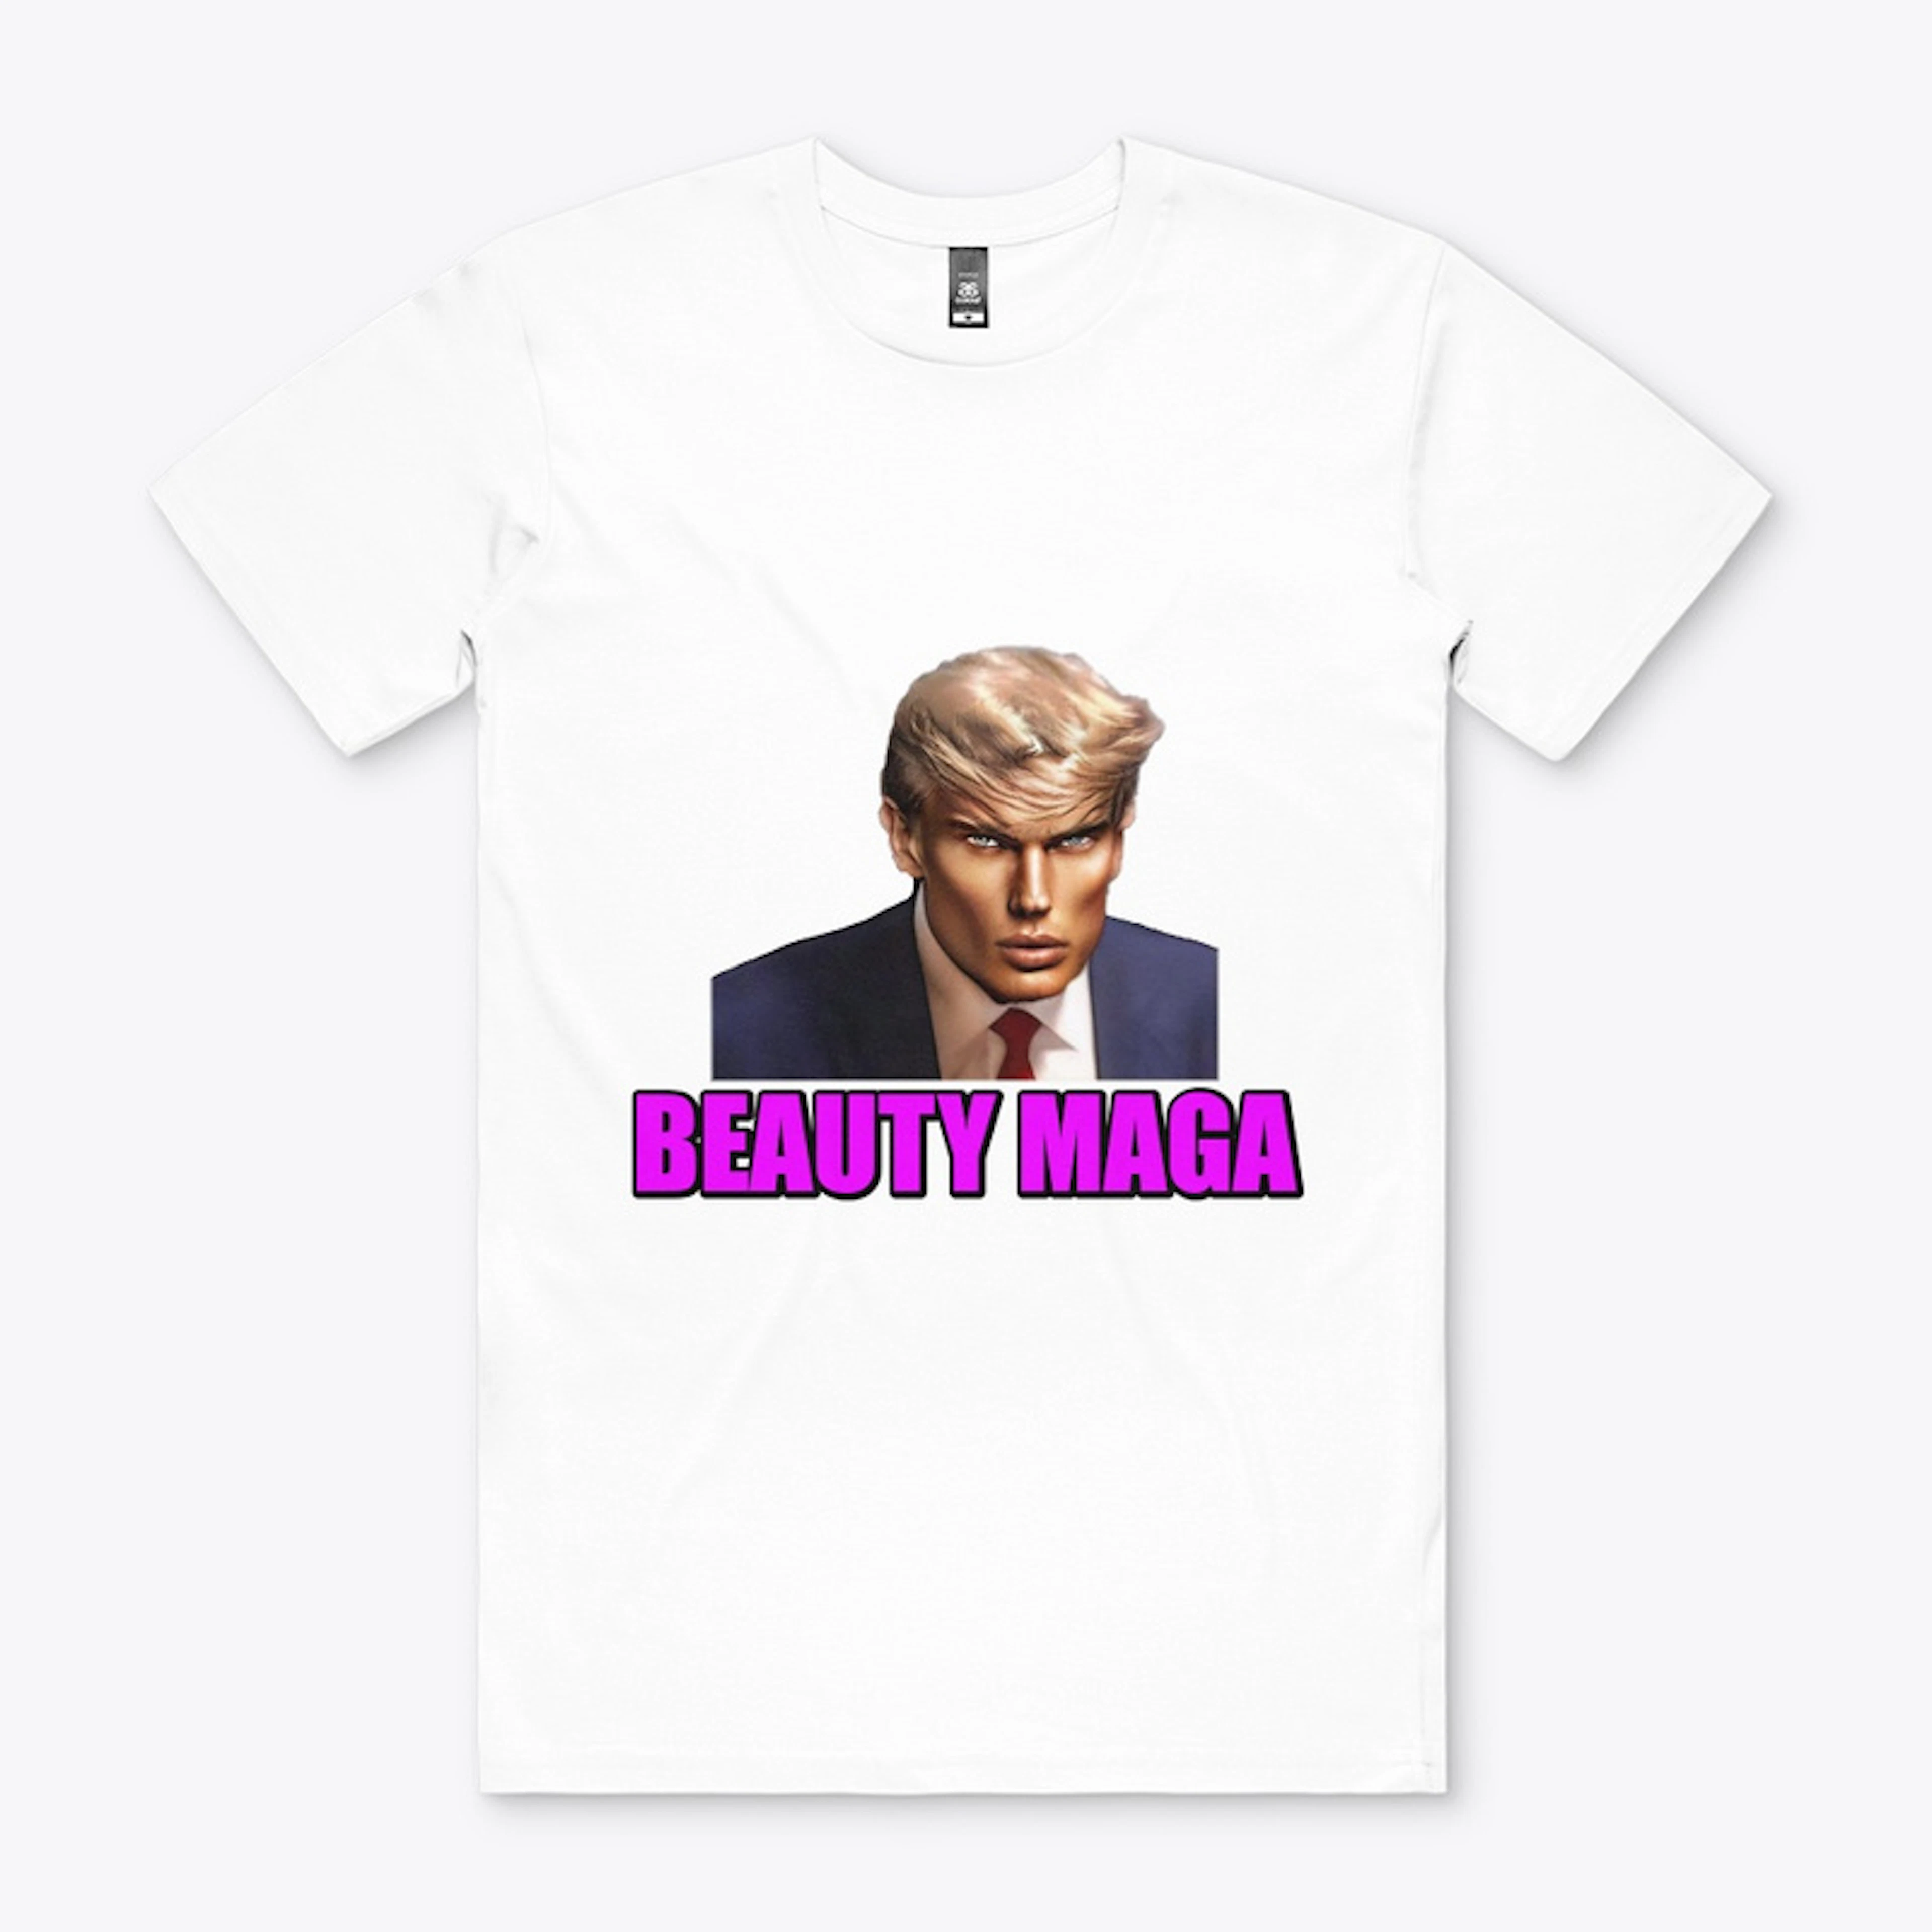 Trump Mugshot "Beauty Maga"